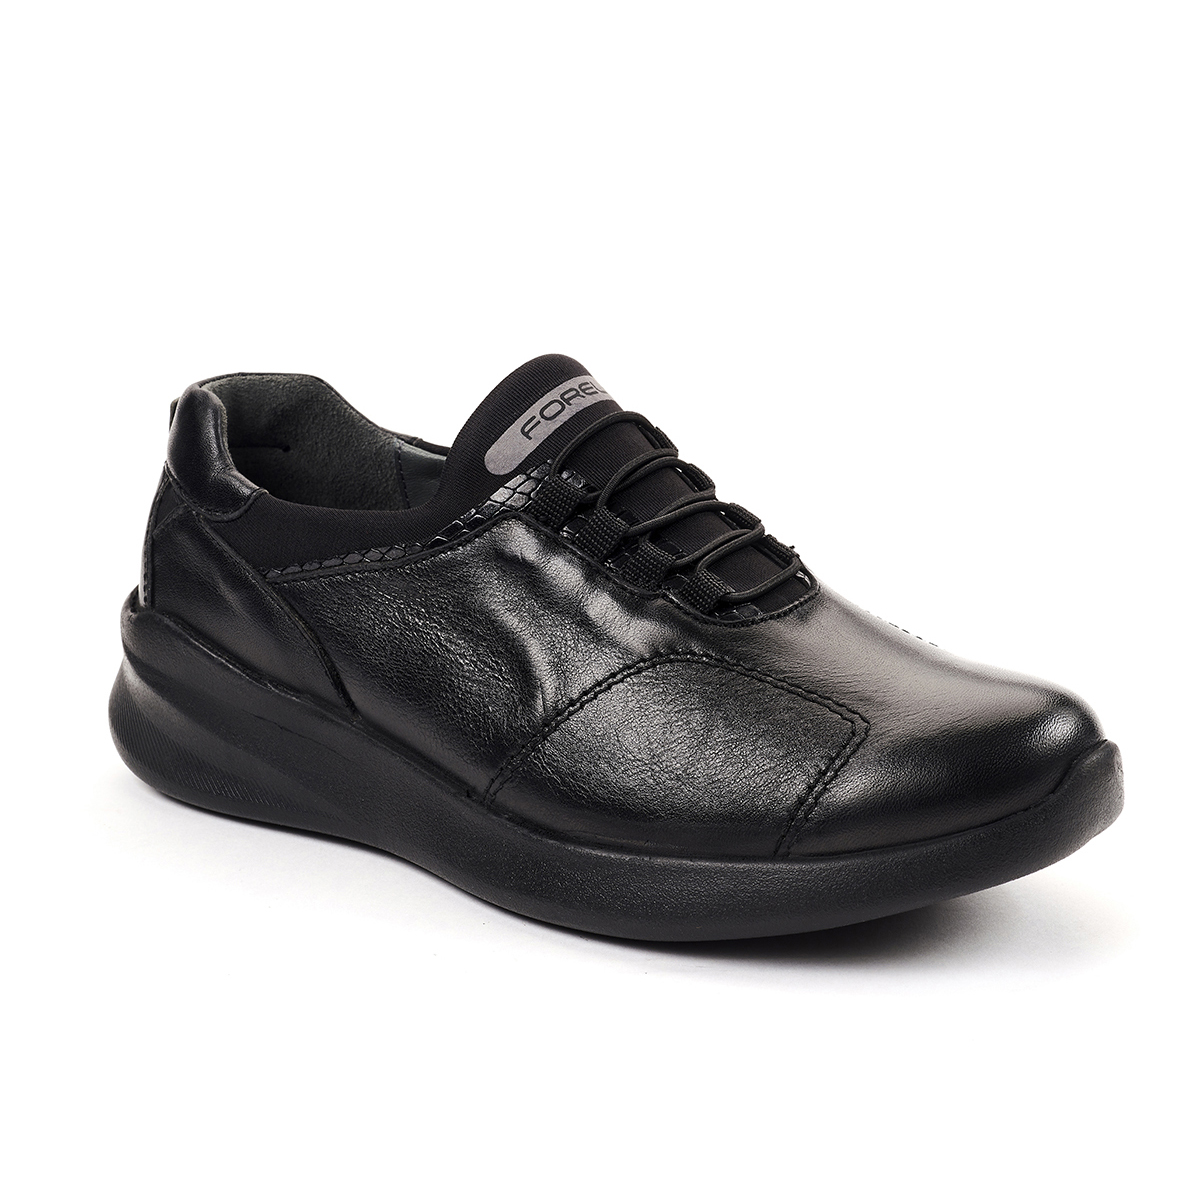 Forelli - Forelli SANDRA-G Comfort Kadın Ayakkabı Siyah